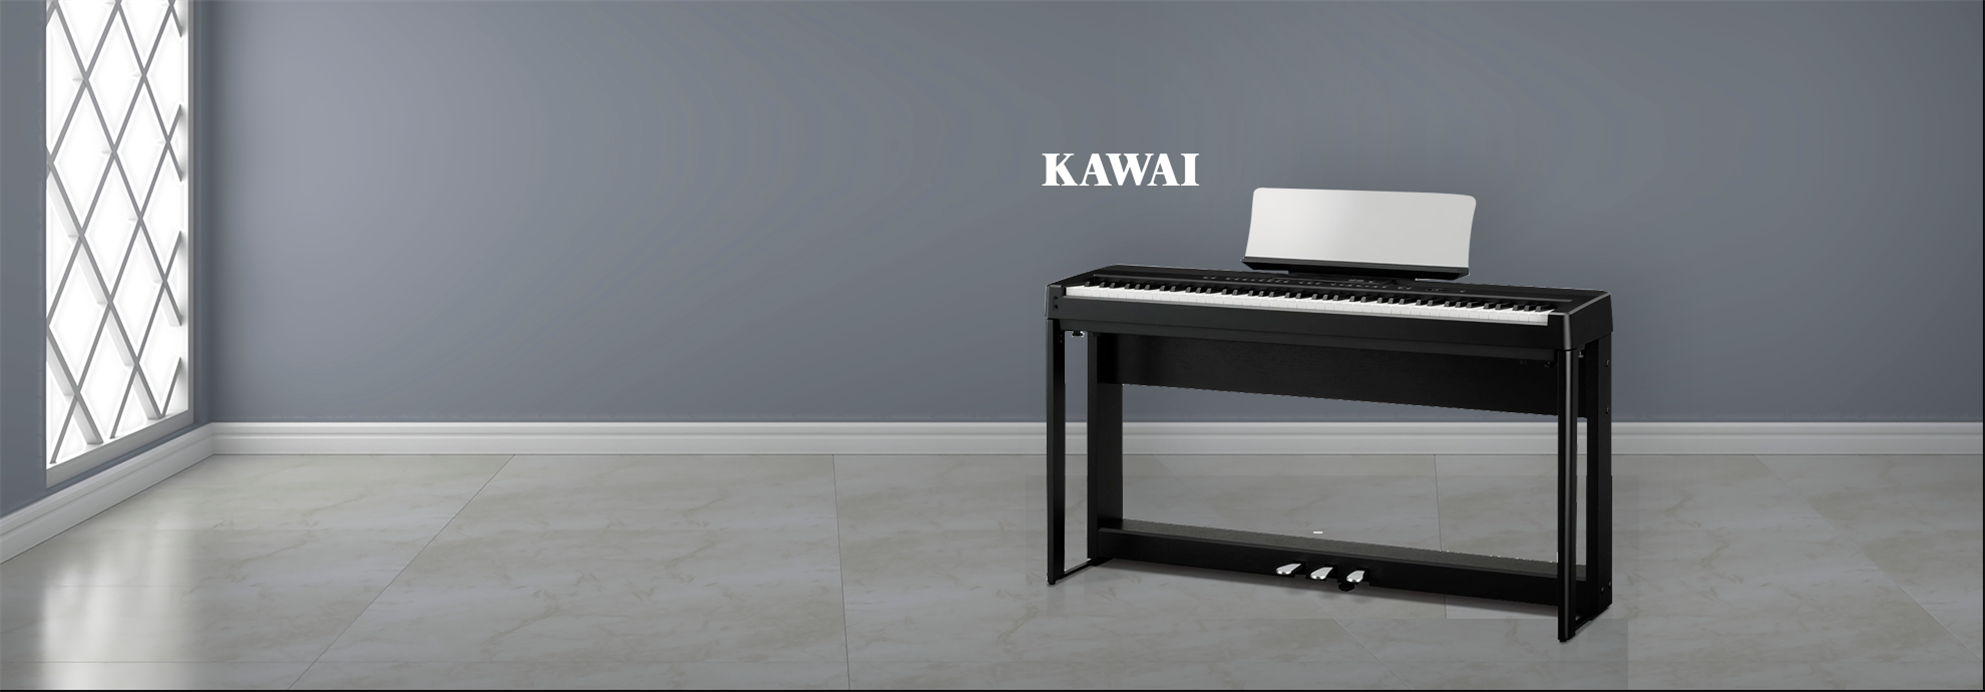 Piano Digital Portátil Kawai